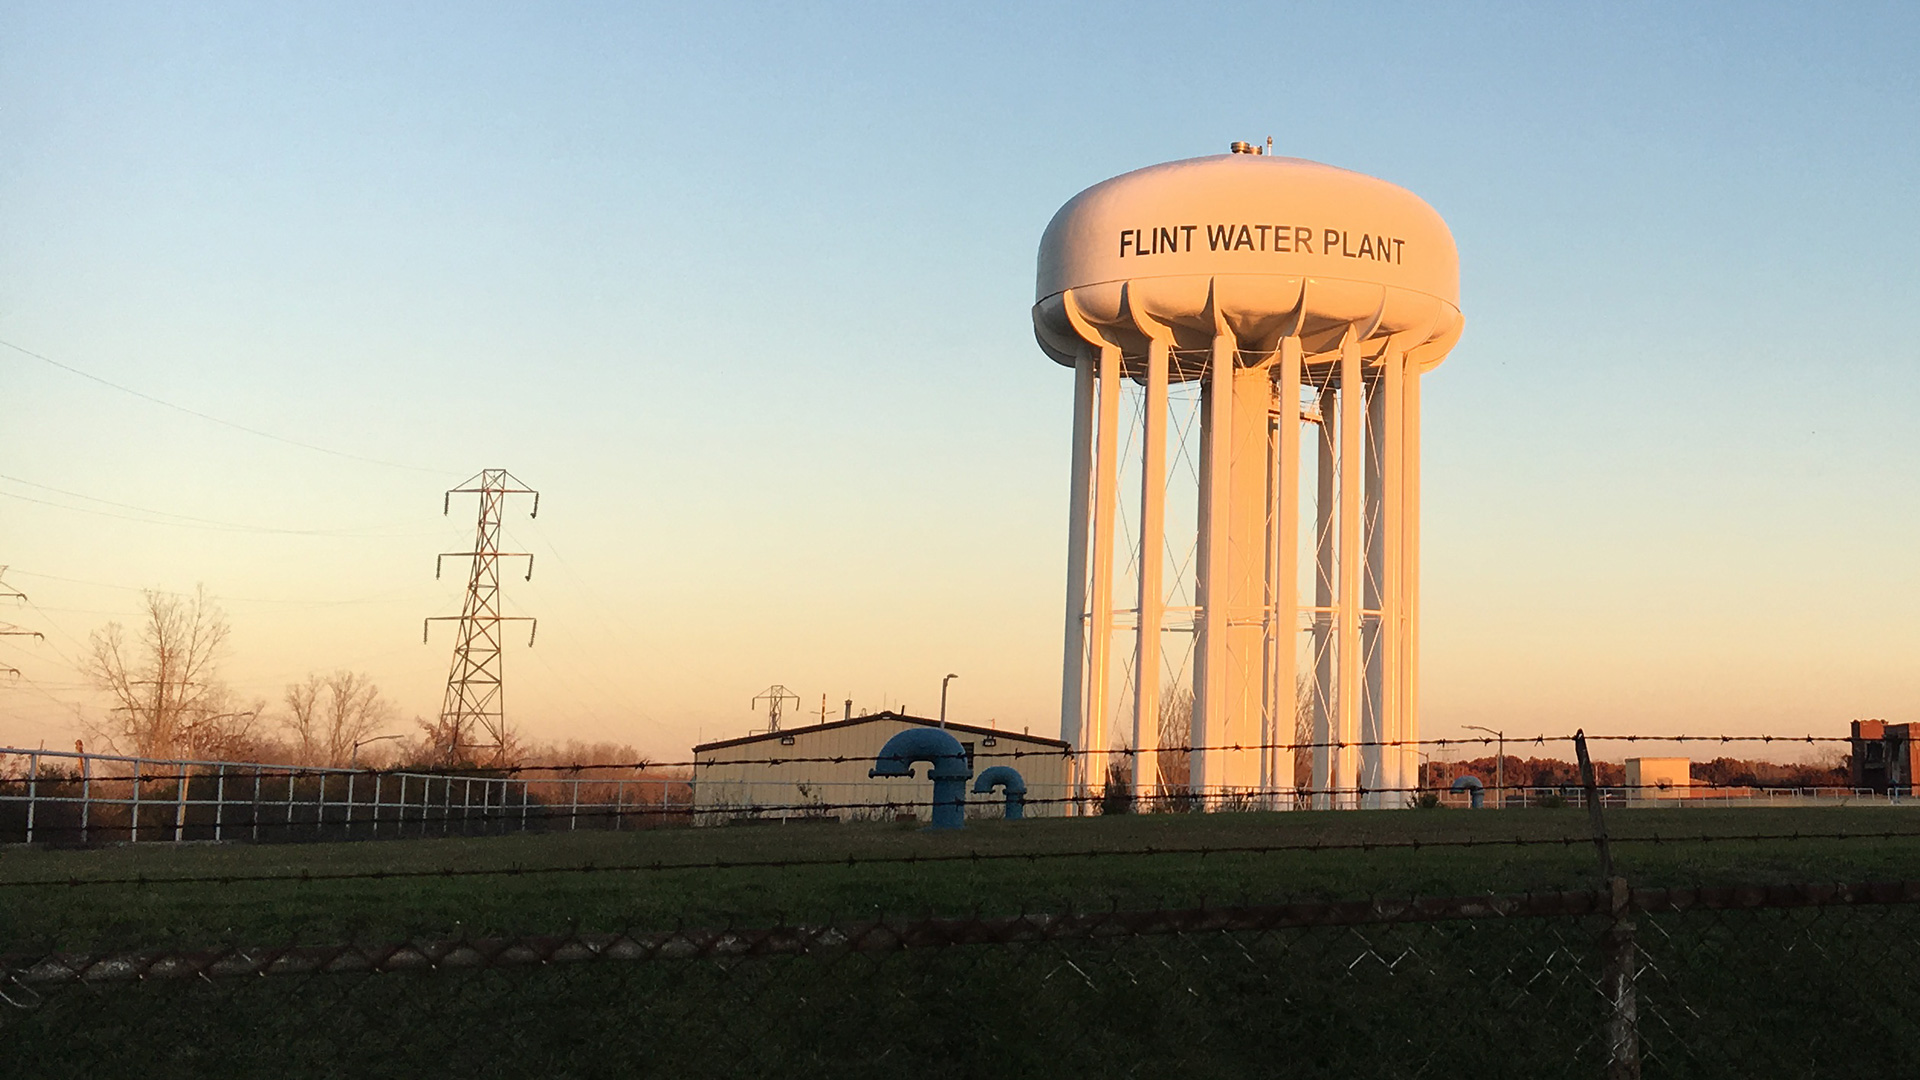 The Flint Water Treatment Plant in Flint, Michigan